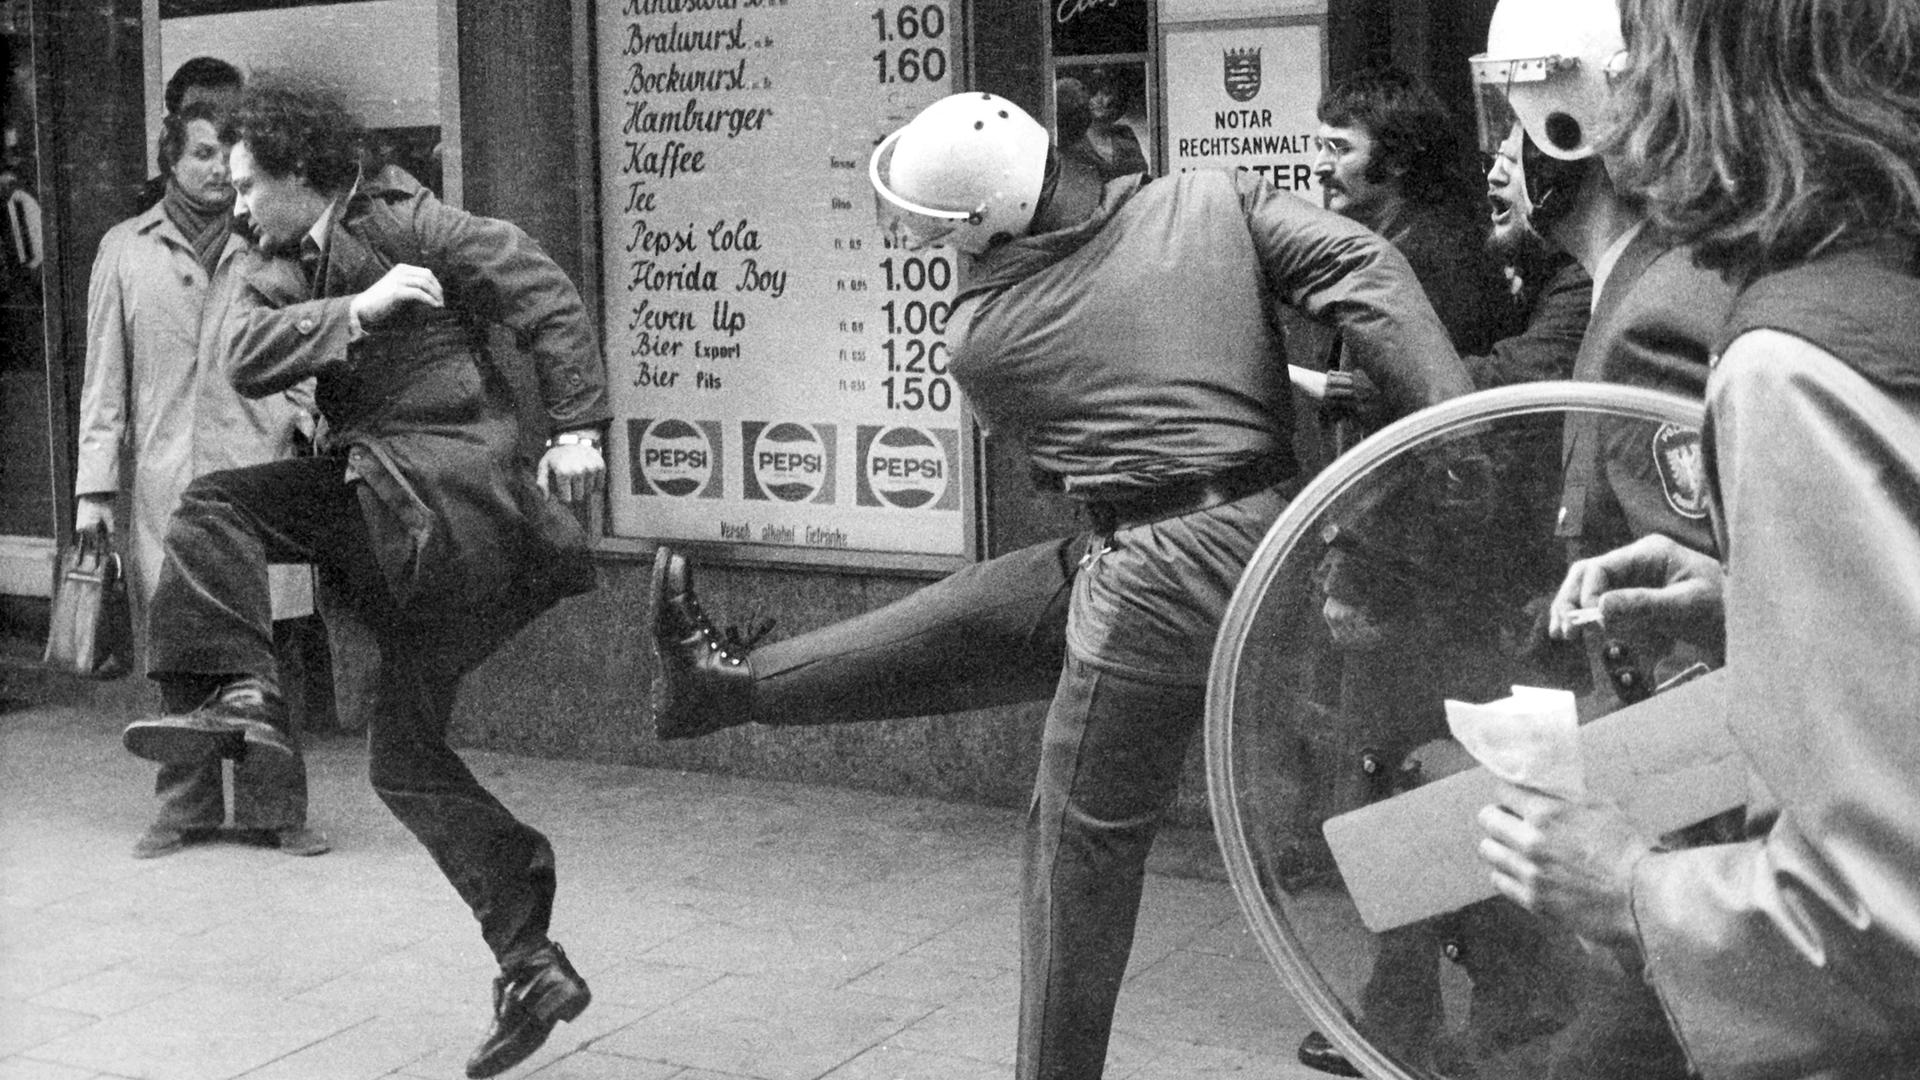 Martin gerät in eine Demonstration und wird zum Opfer polizeilicher Maßnahmen. Zu sehen: Polizeieinsatz  einer nicht genehmigten Demonstration 1974. Ein Polizist versucht, einem Demonstranten einen Tritt zu versetzen. 